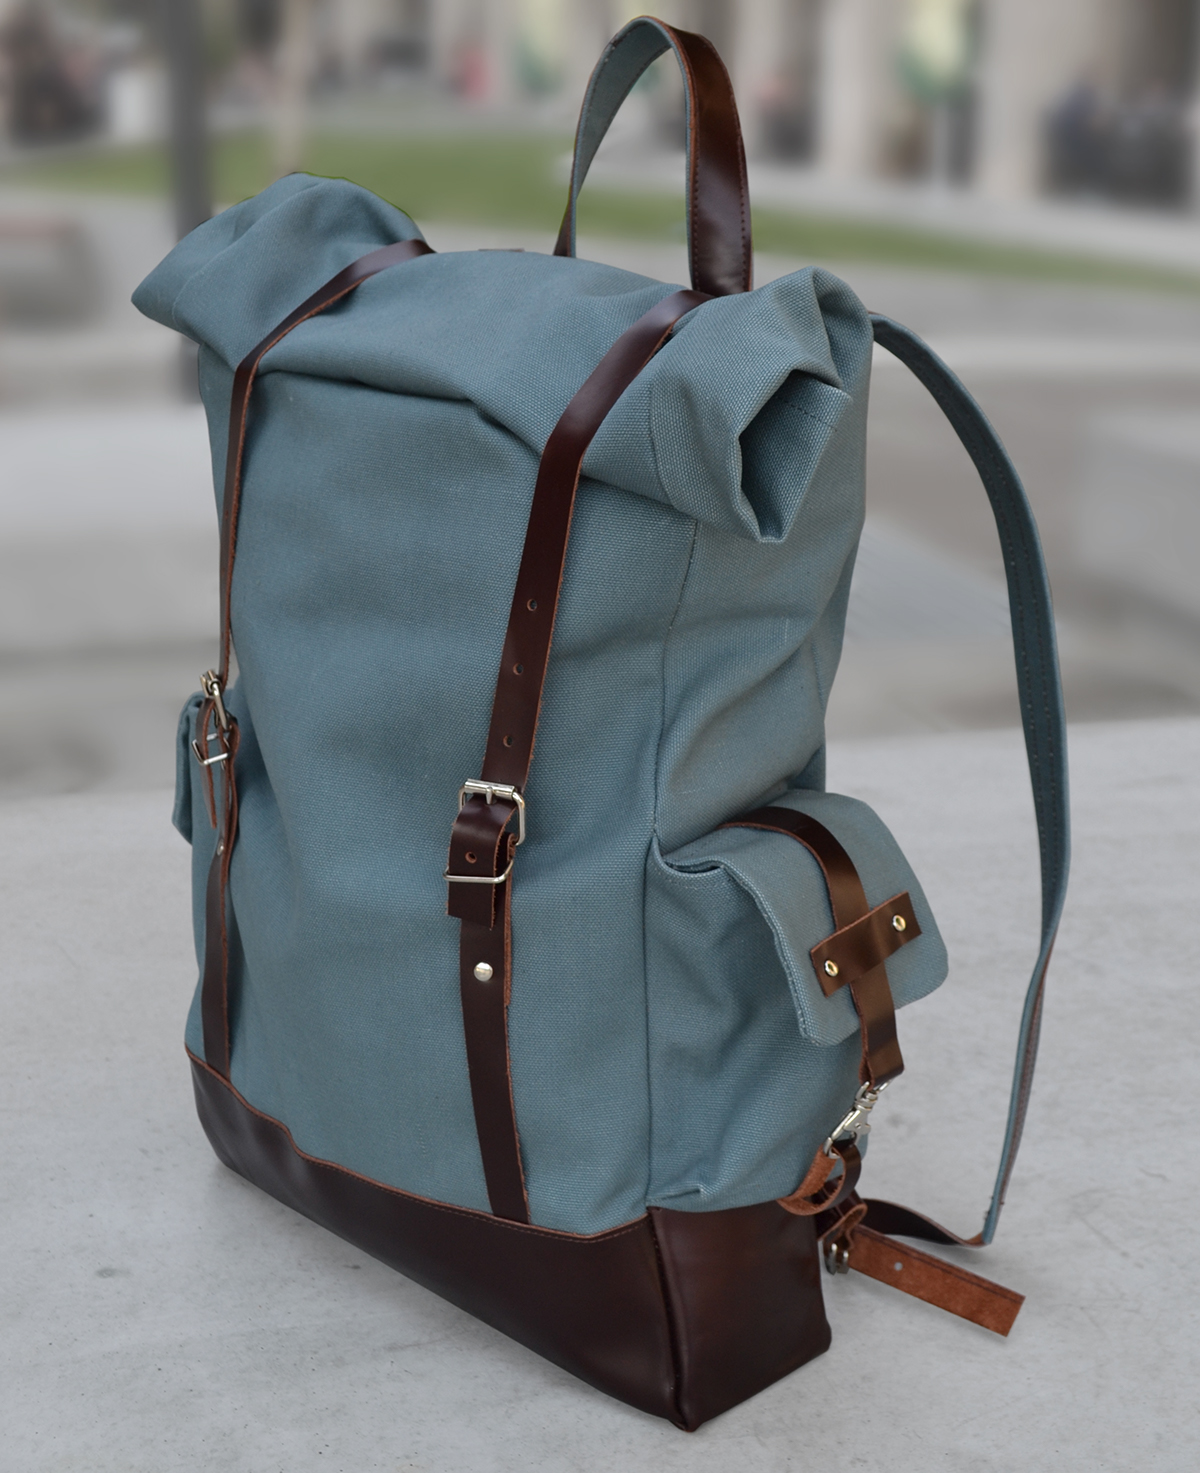 bag backpack textile leather SEW cut design bag making